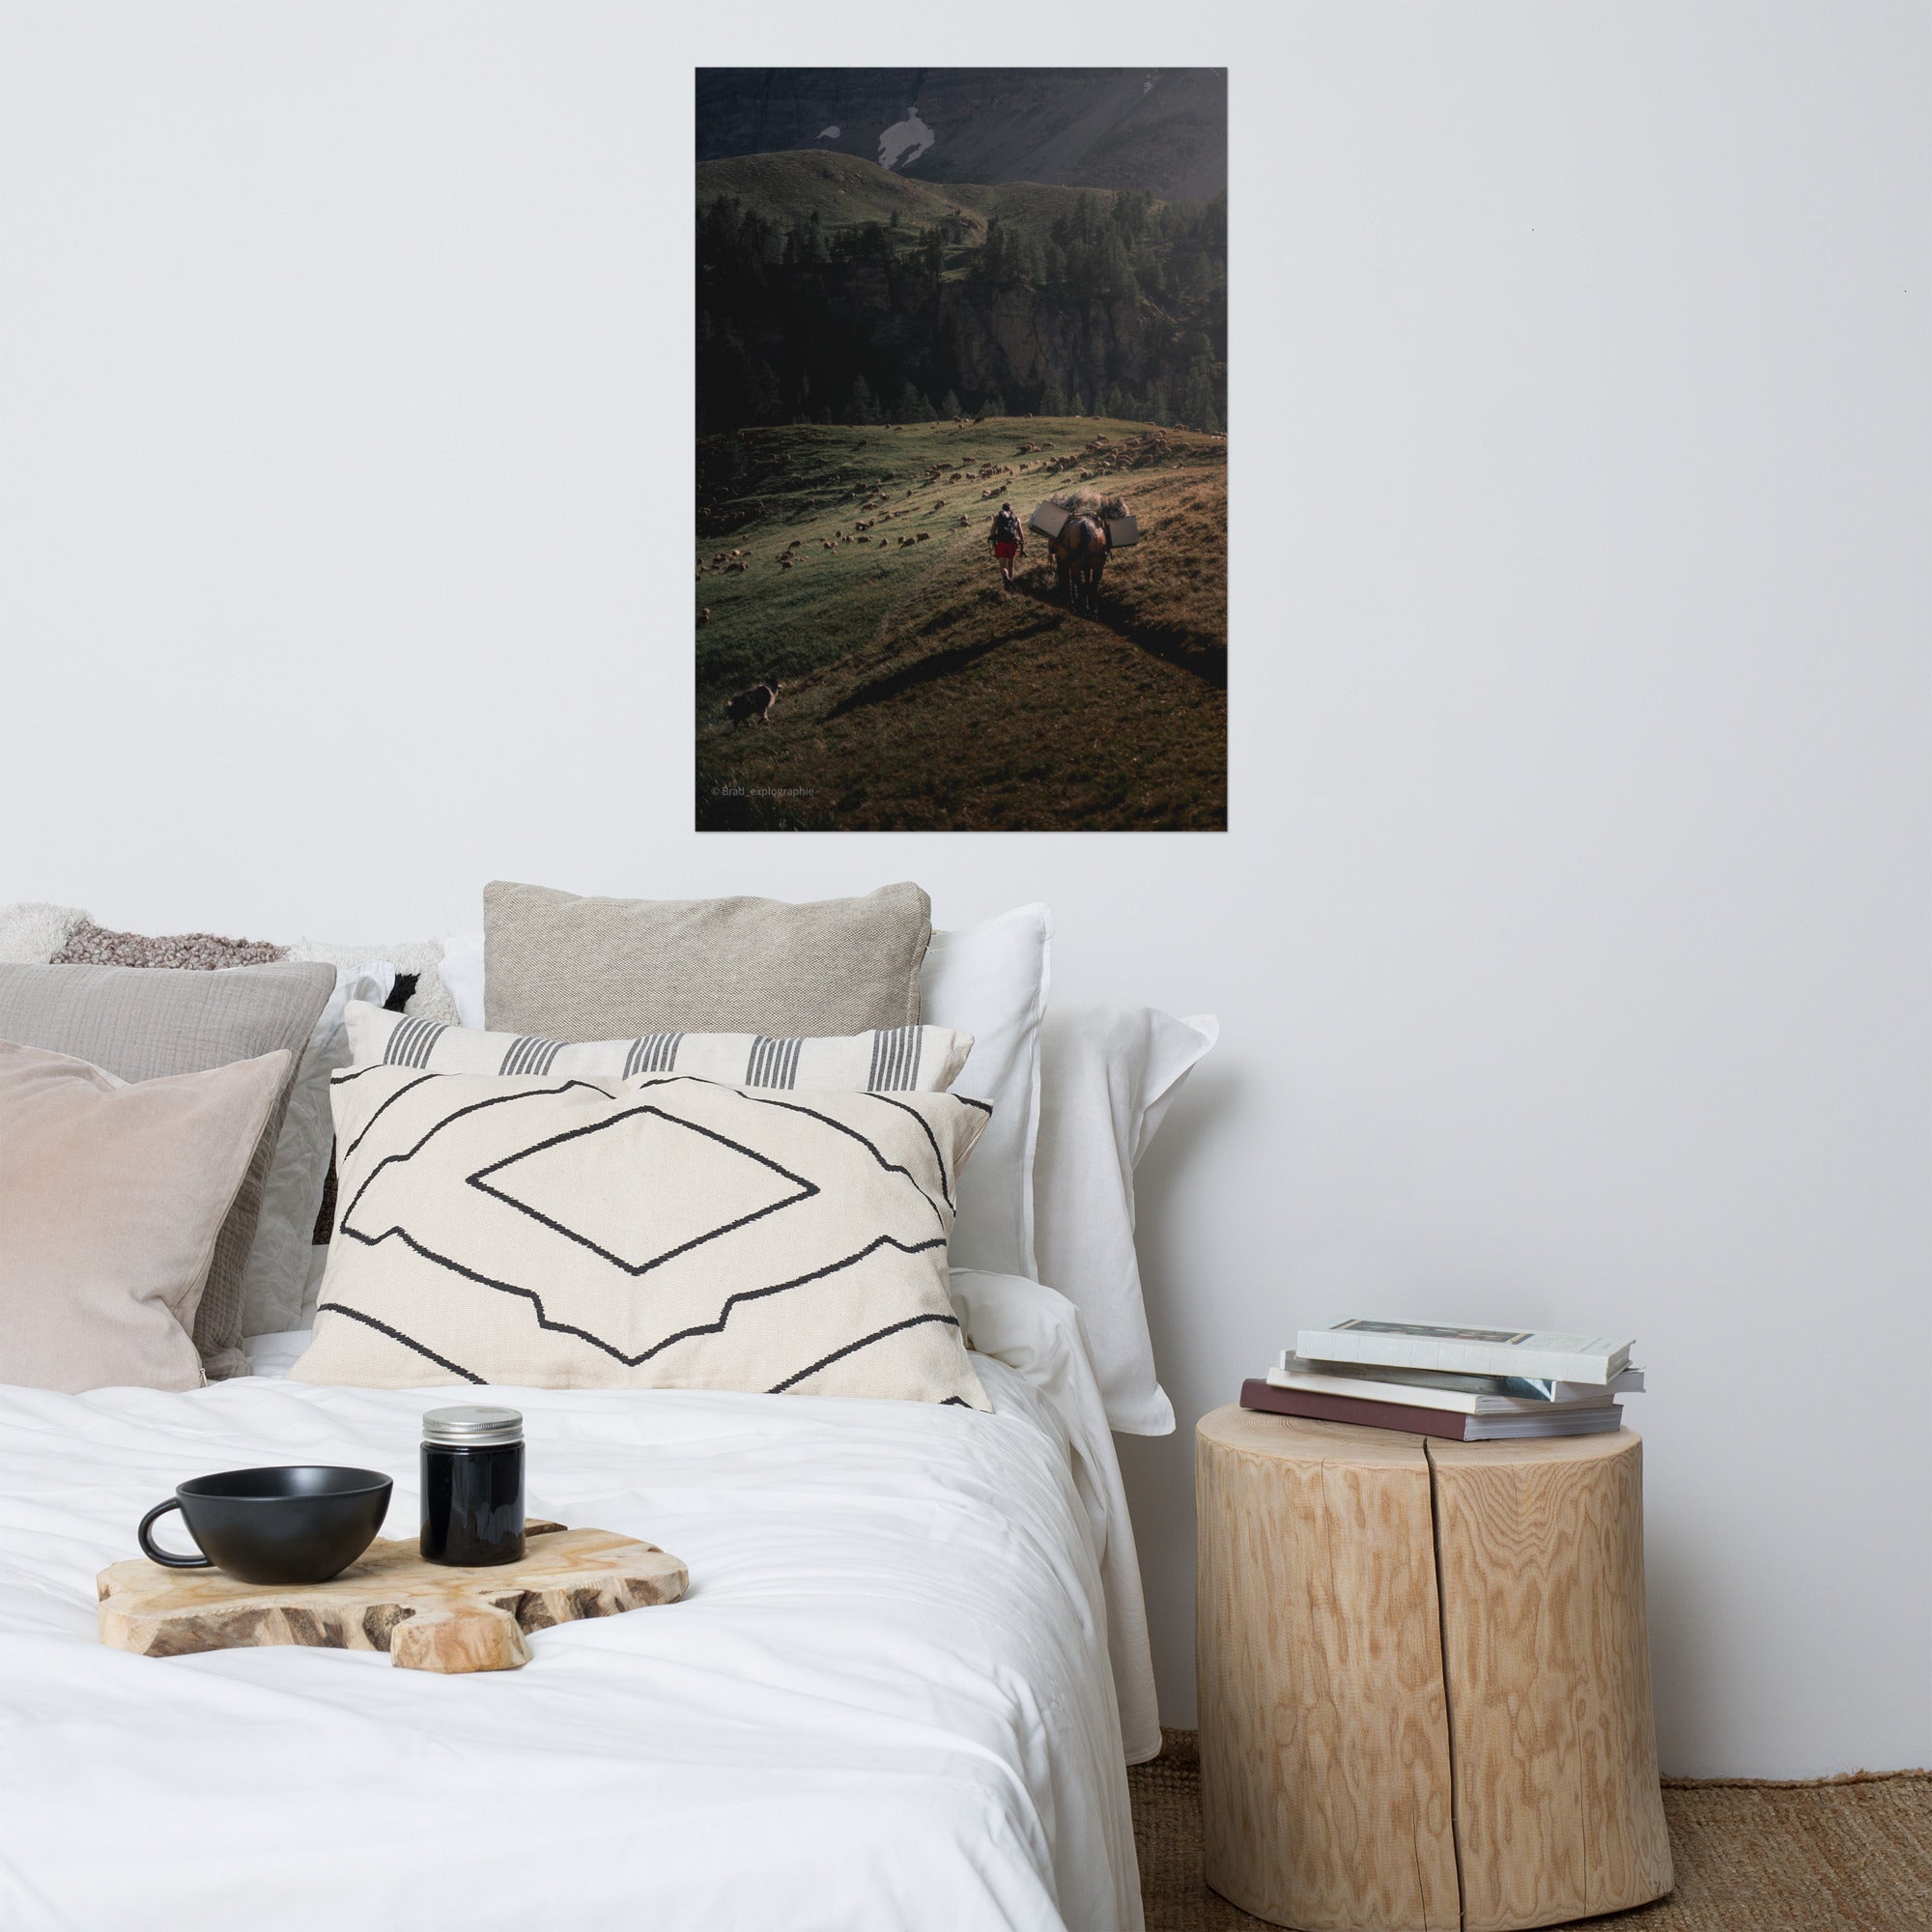 Une scène pittoresque de la nature avec un chien de berger, un cheval, un randonneur et un troupeau de moutons à la lumière du couchant, capturée par Brad_explographie.